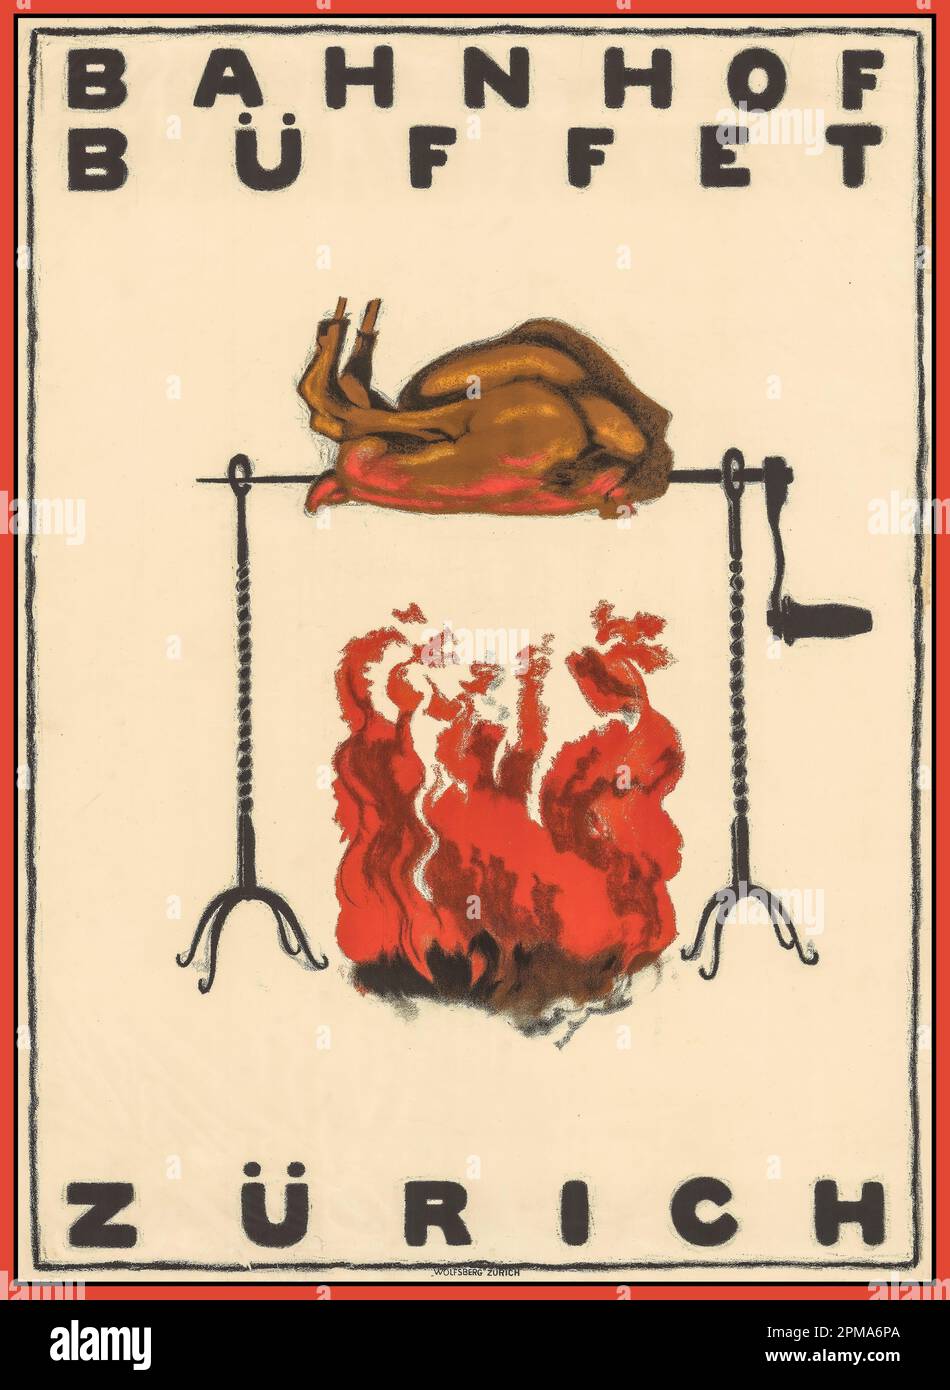 Bahnhof im Vintage 1920 Buffet Essen Poster Lithograph Bahnhof Zürich Buffet mit einem Huhn auf einem offenen Rotisserie Feuer von Augusto Giacometti (1877-1947) BAHNHOF BUFFET ZÜRICH 1921 Stockfoto